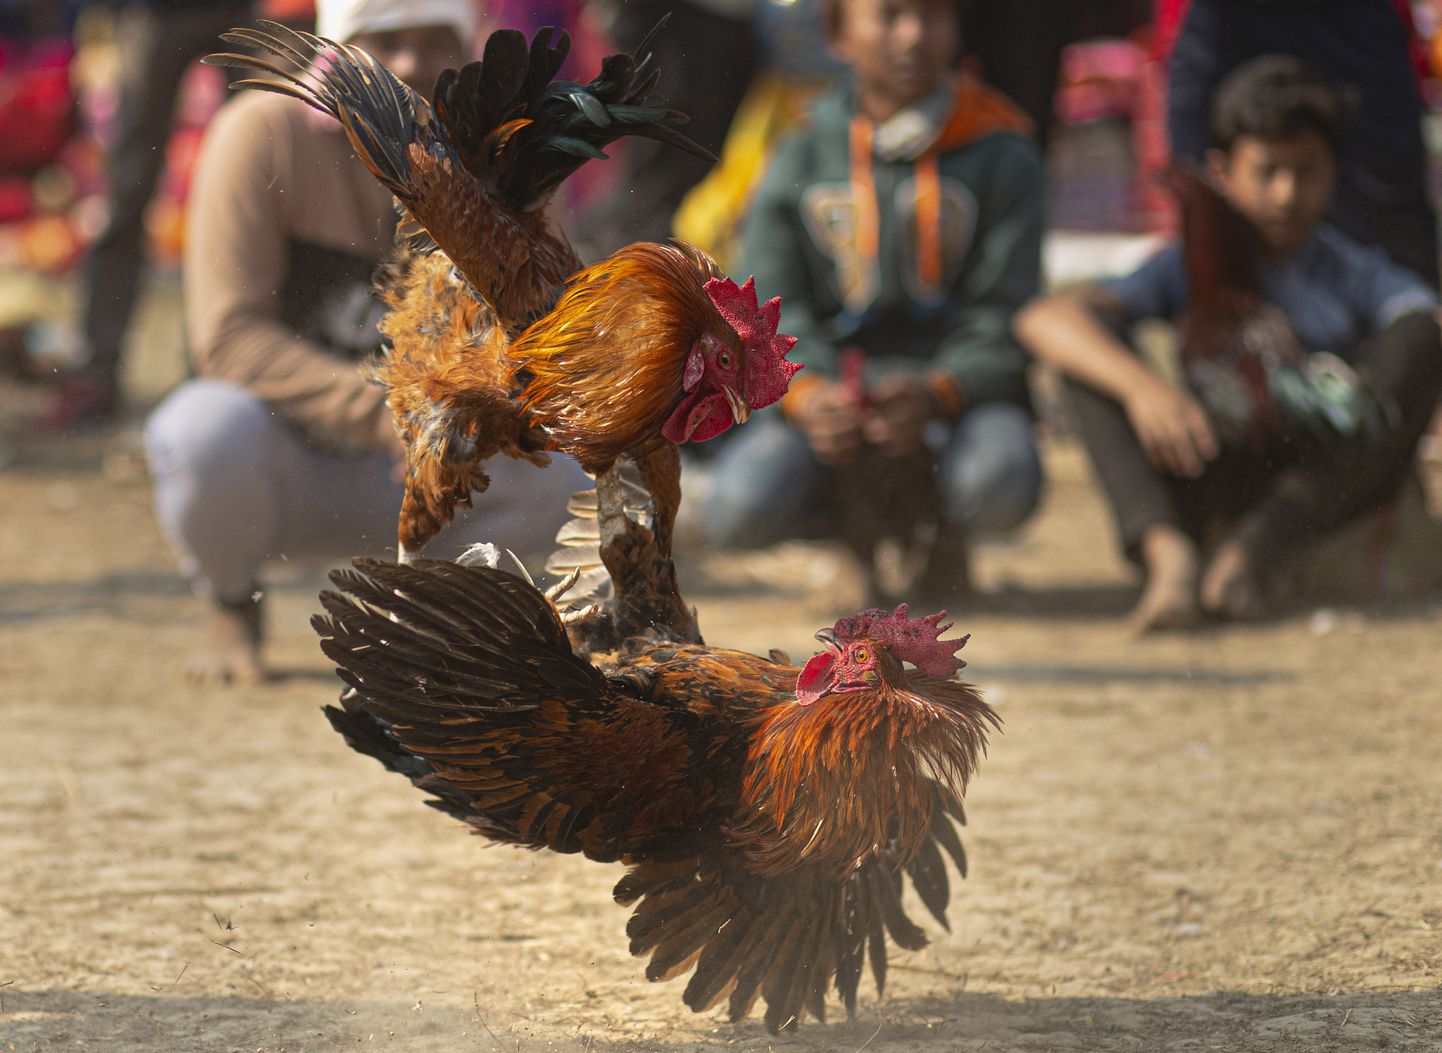 Kukevõitlus Indias Jagiroadis peetud festivalil eelmisel nädalala. Tegelikult on loomaturniirid riigis keelatud, kuid seadust ei jõustata rangelt.